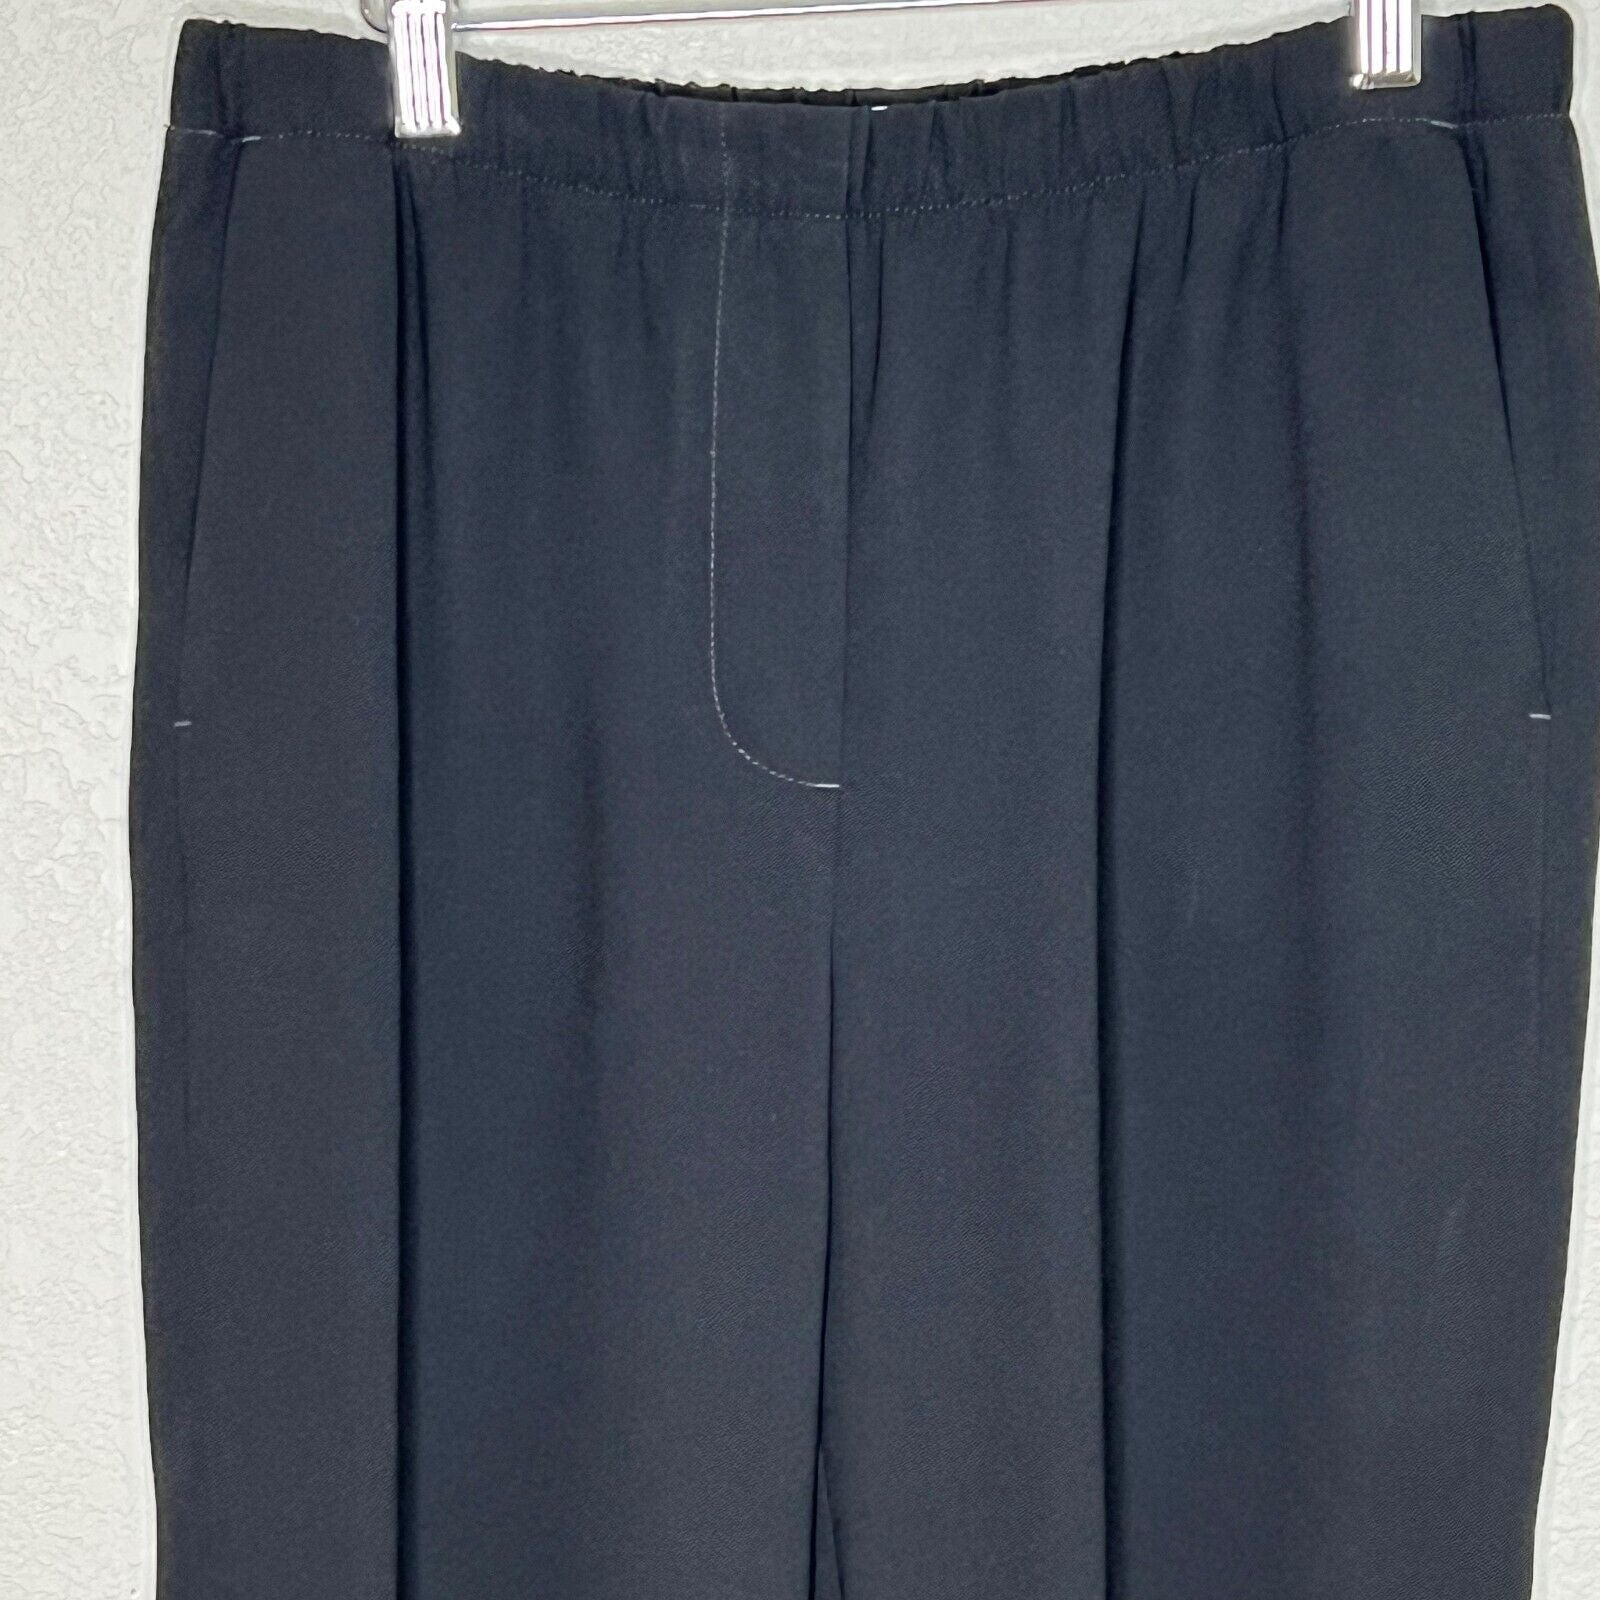 Vince Women's Black Pull-On Capri Pants Size Medium